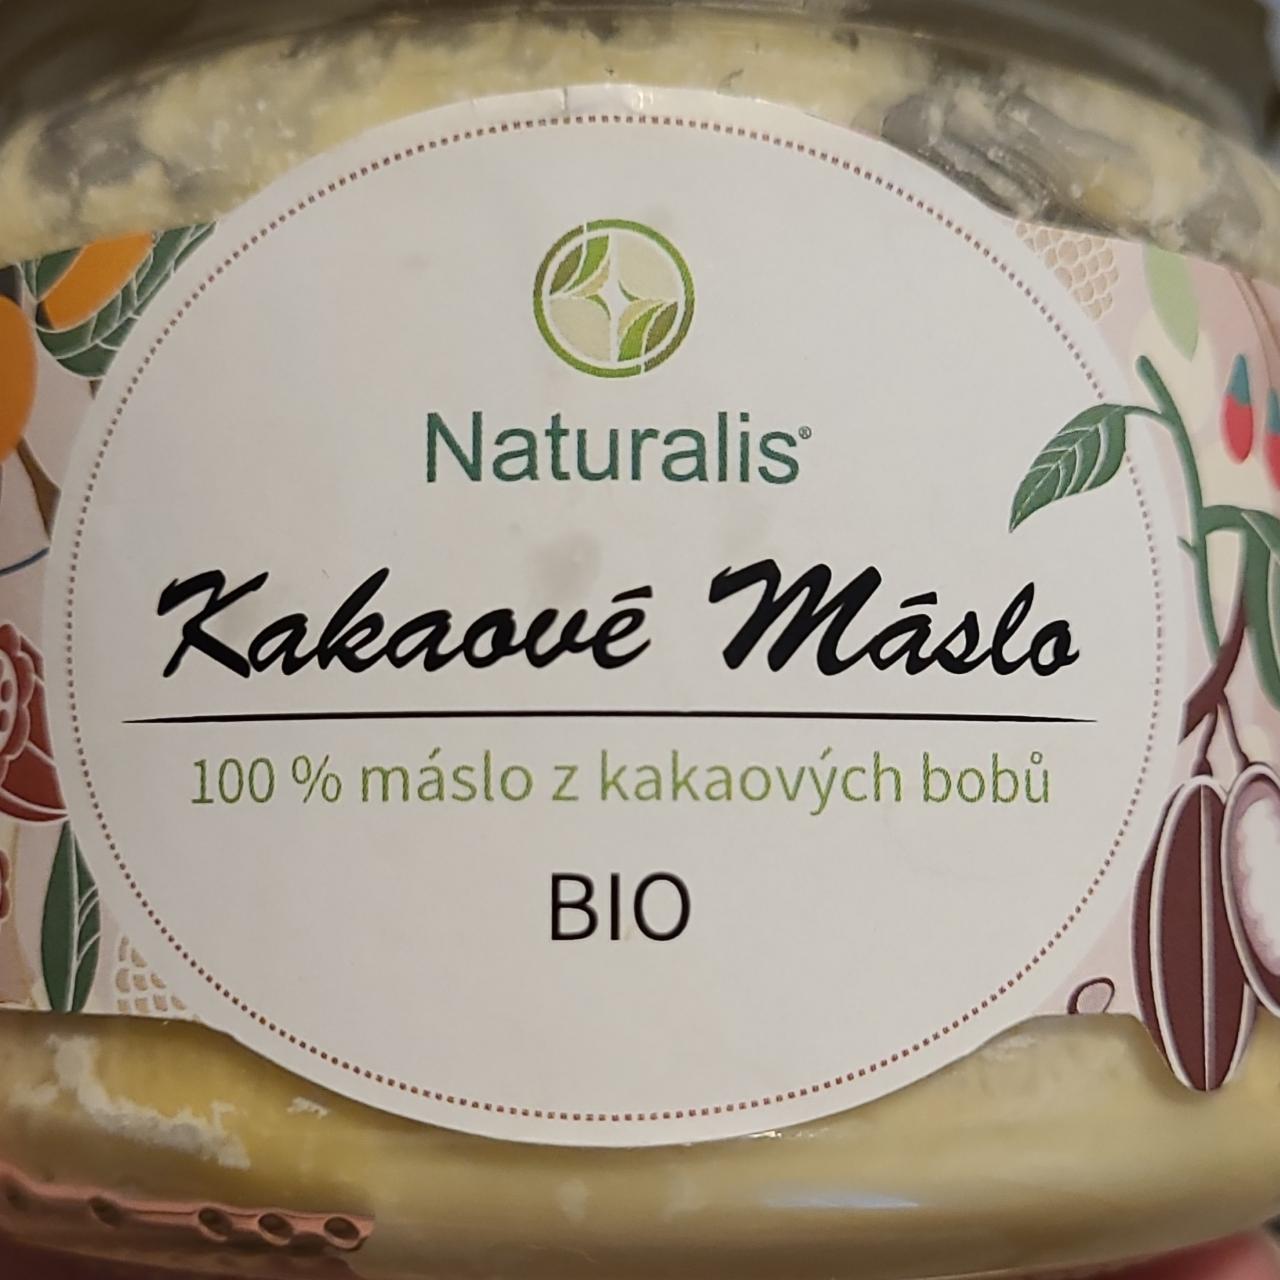 Fotografie - Kakaové máslo 100% máslo z kakaových bobů bio Naturalis